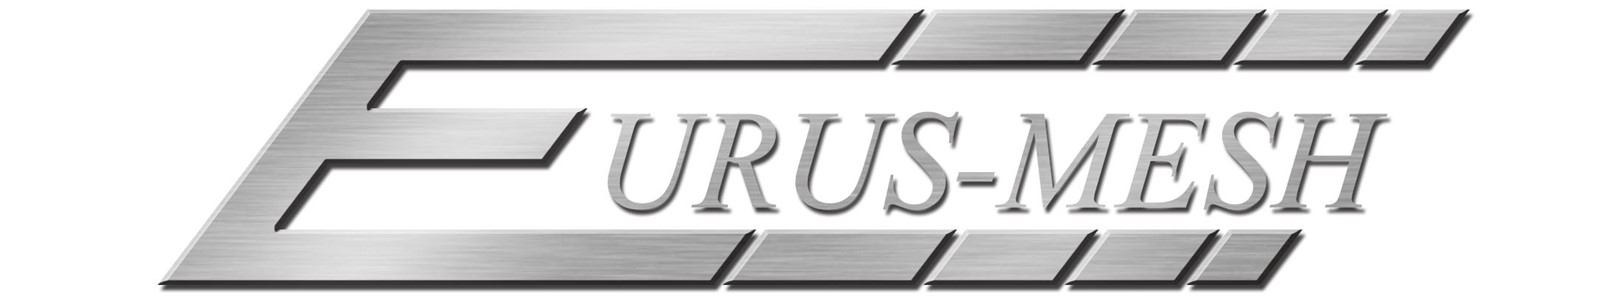 Eurus-Mesh Co., Ltd.